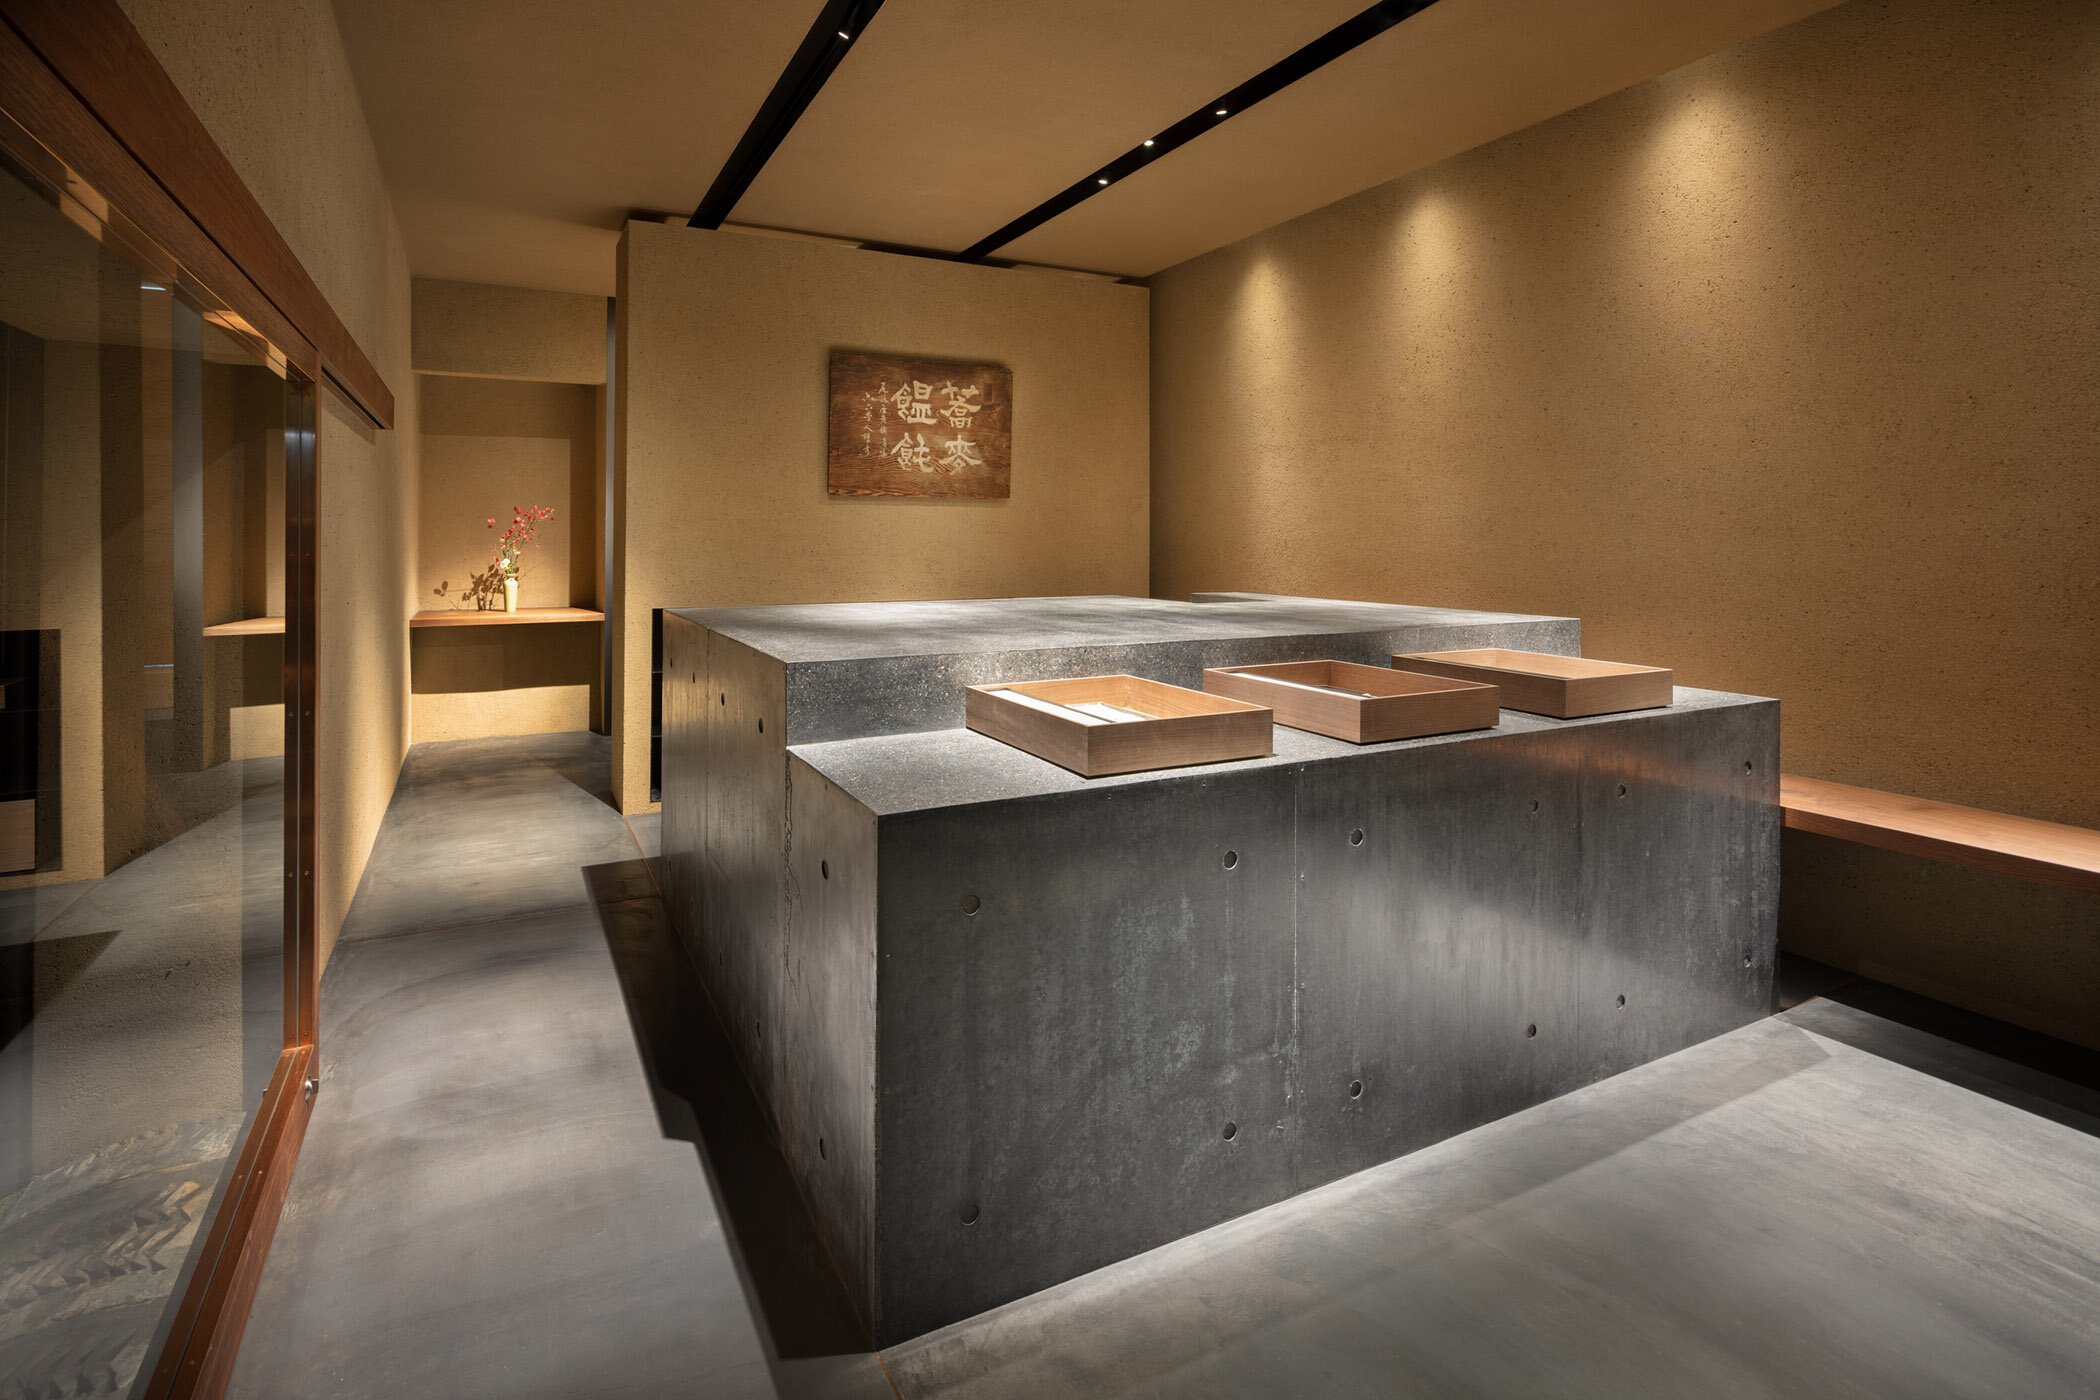  柳原照弘 Teruhiro Yanagihara Studioがインテリアデザインを手掛けた京都の尾張屋本店 菓子処のカウンター 